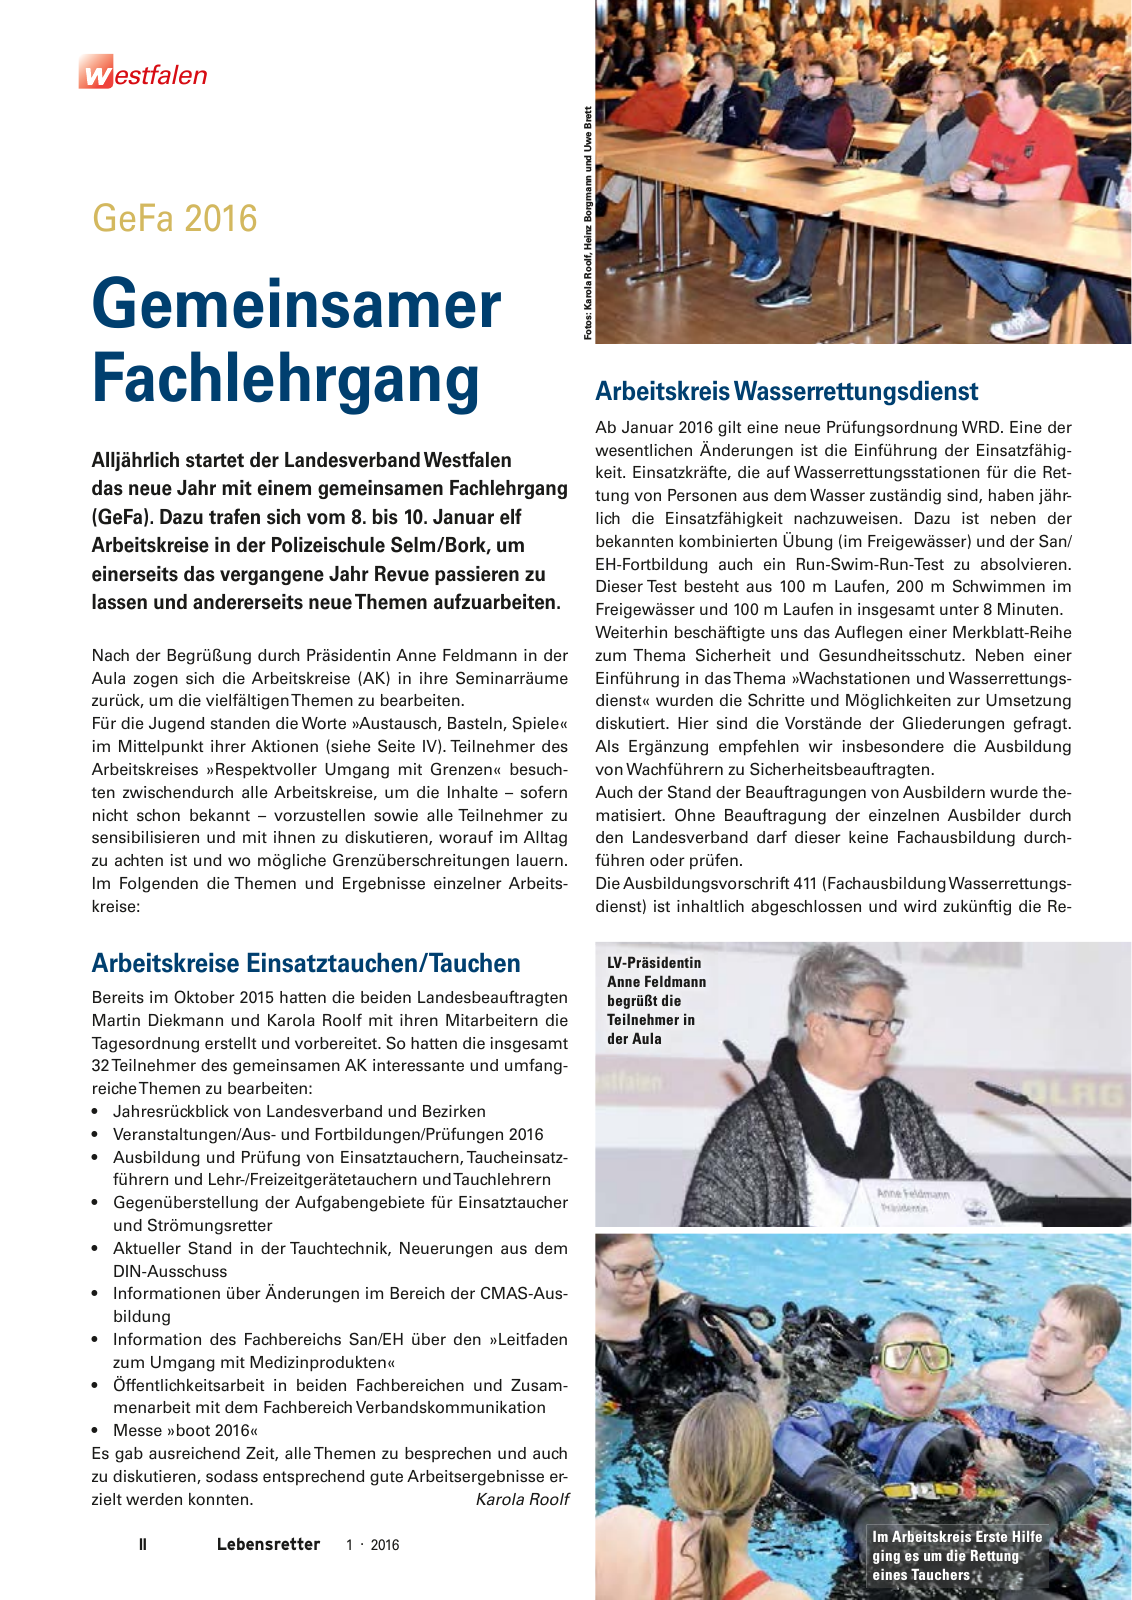 Vorschau Lebensretter 1/2016 - Regionalausgabe Westfalen Seite 4